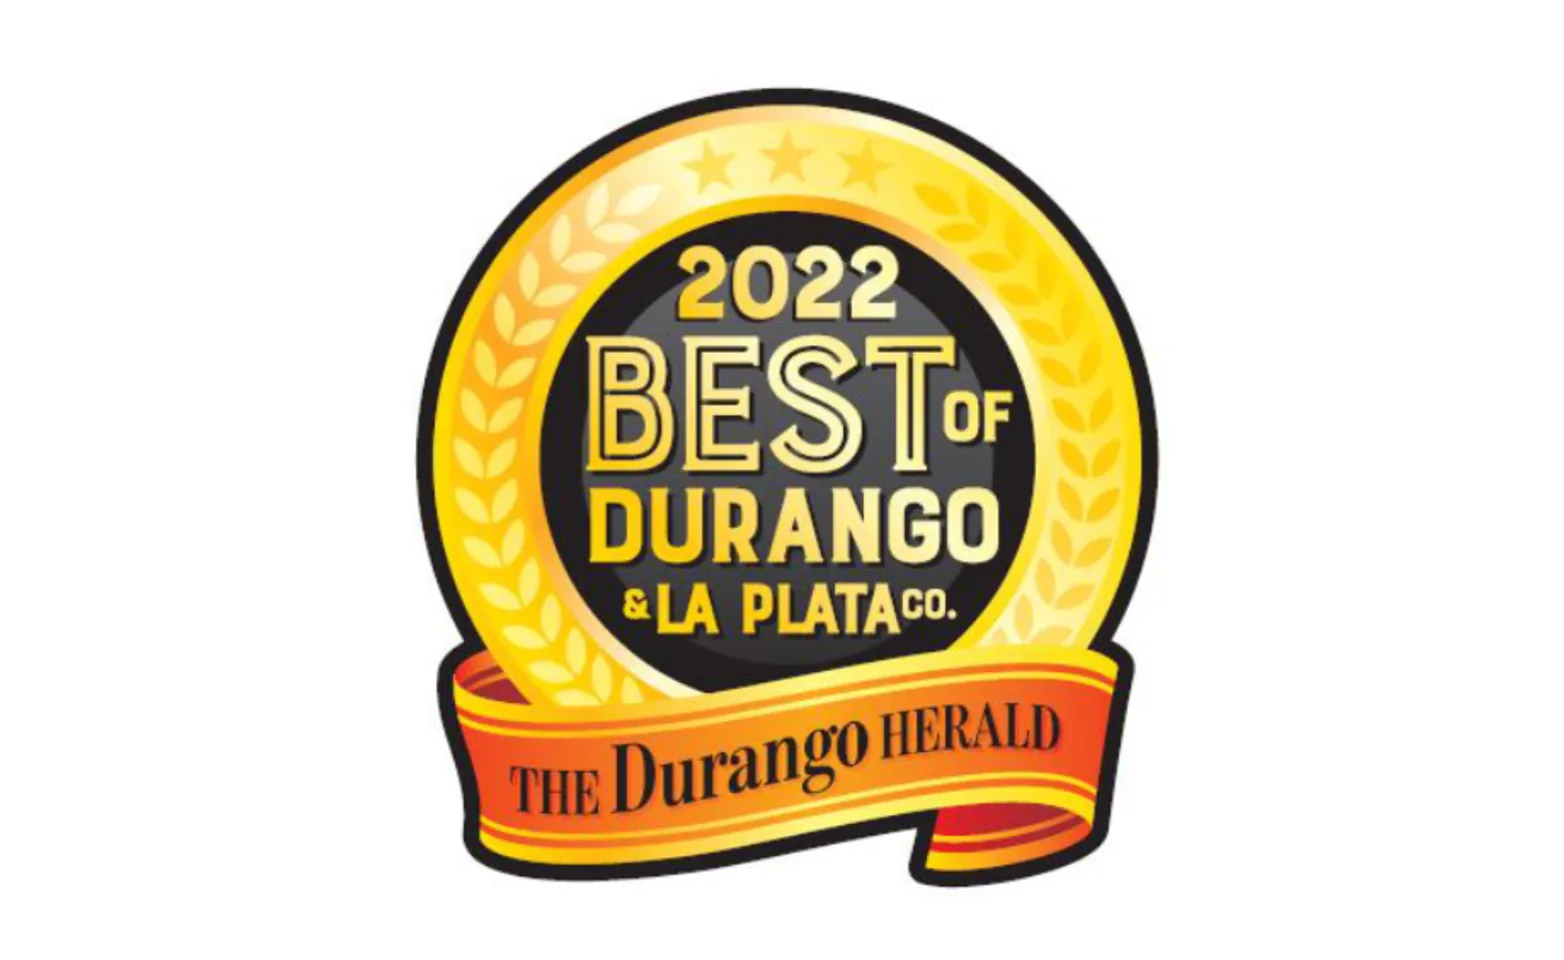 Best of Durango 2022 Award